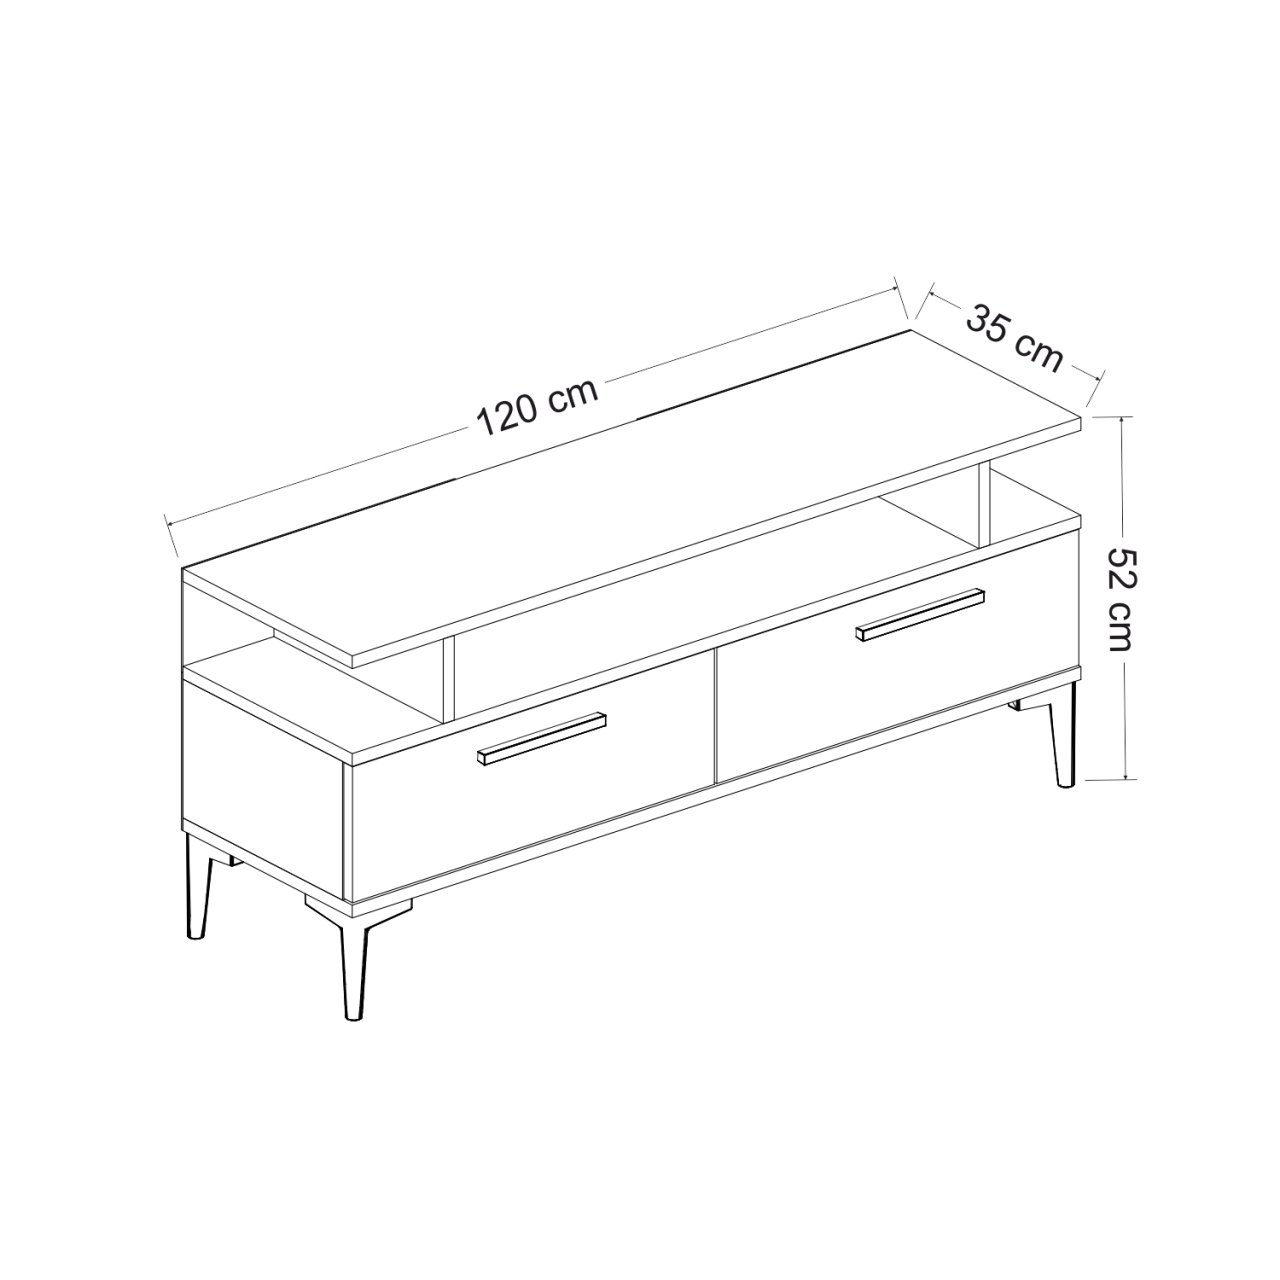 Schéma technique du meuble TV 'SEATLE' leBoMeuble avec dimensions précises 120x35x52 cm